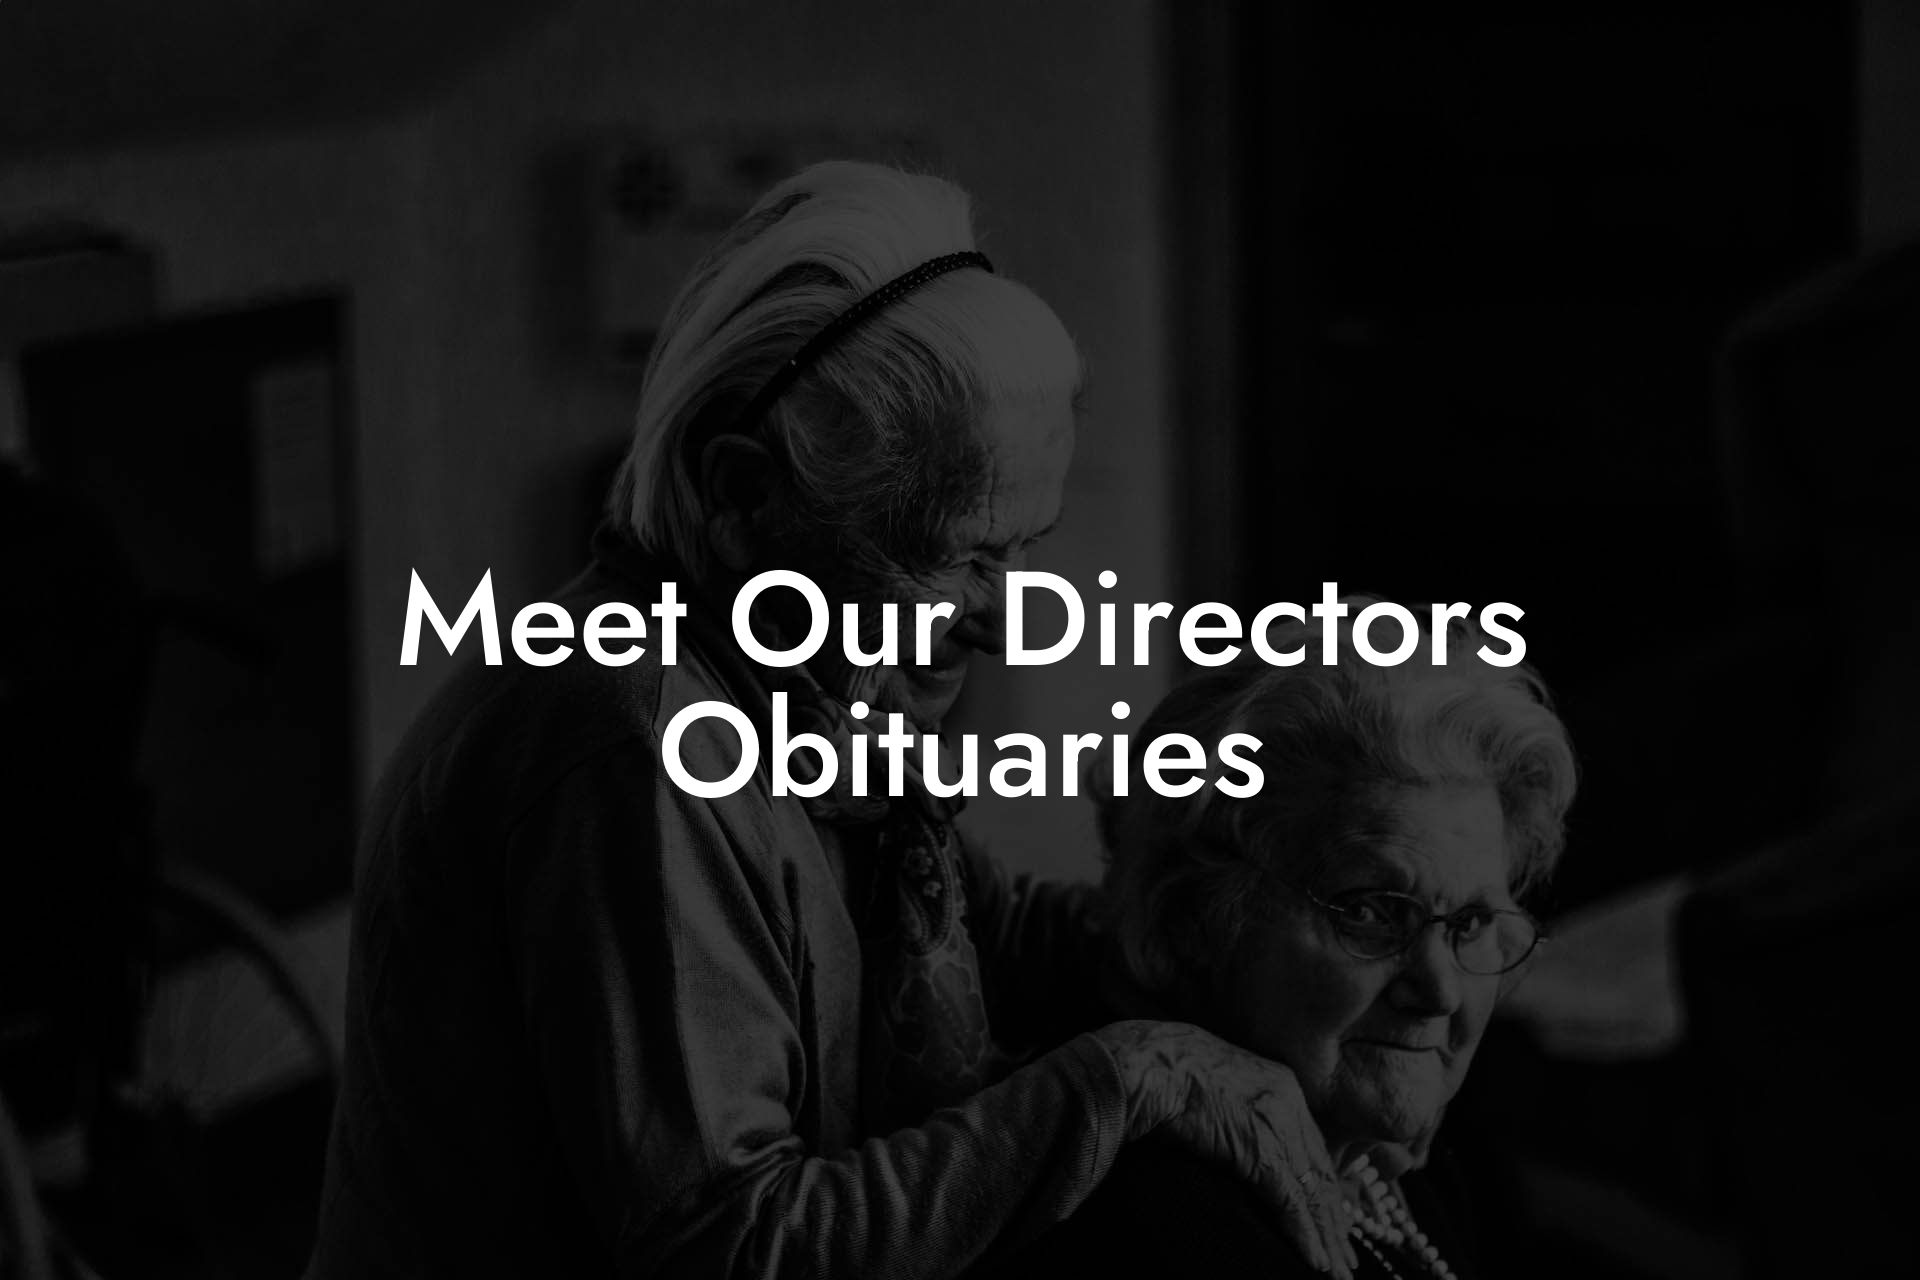 Meet Our Directors Obituaries